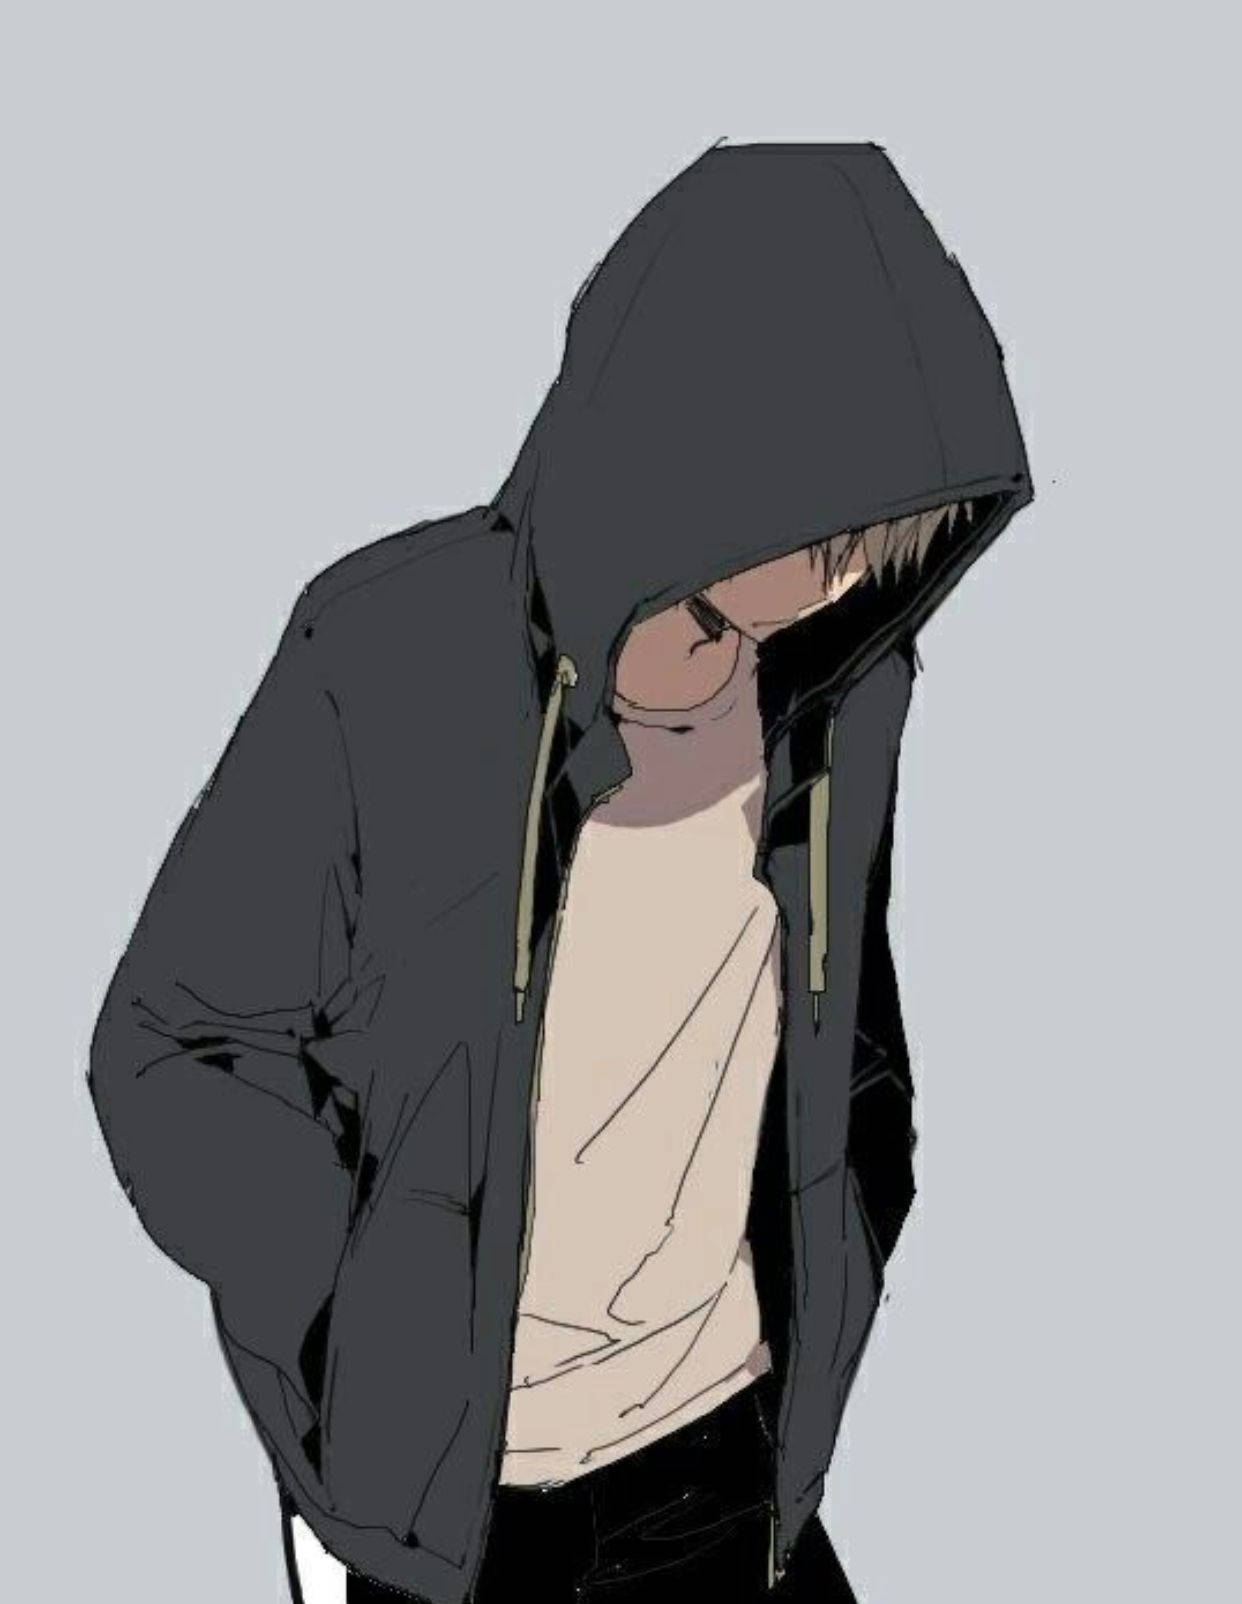 Hooded Anime Boy Sad Aesthetic Background